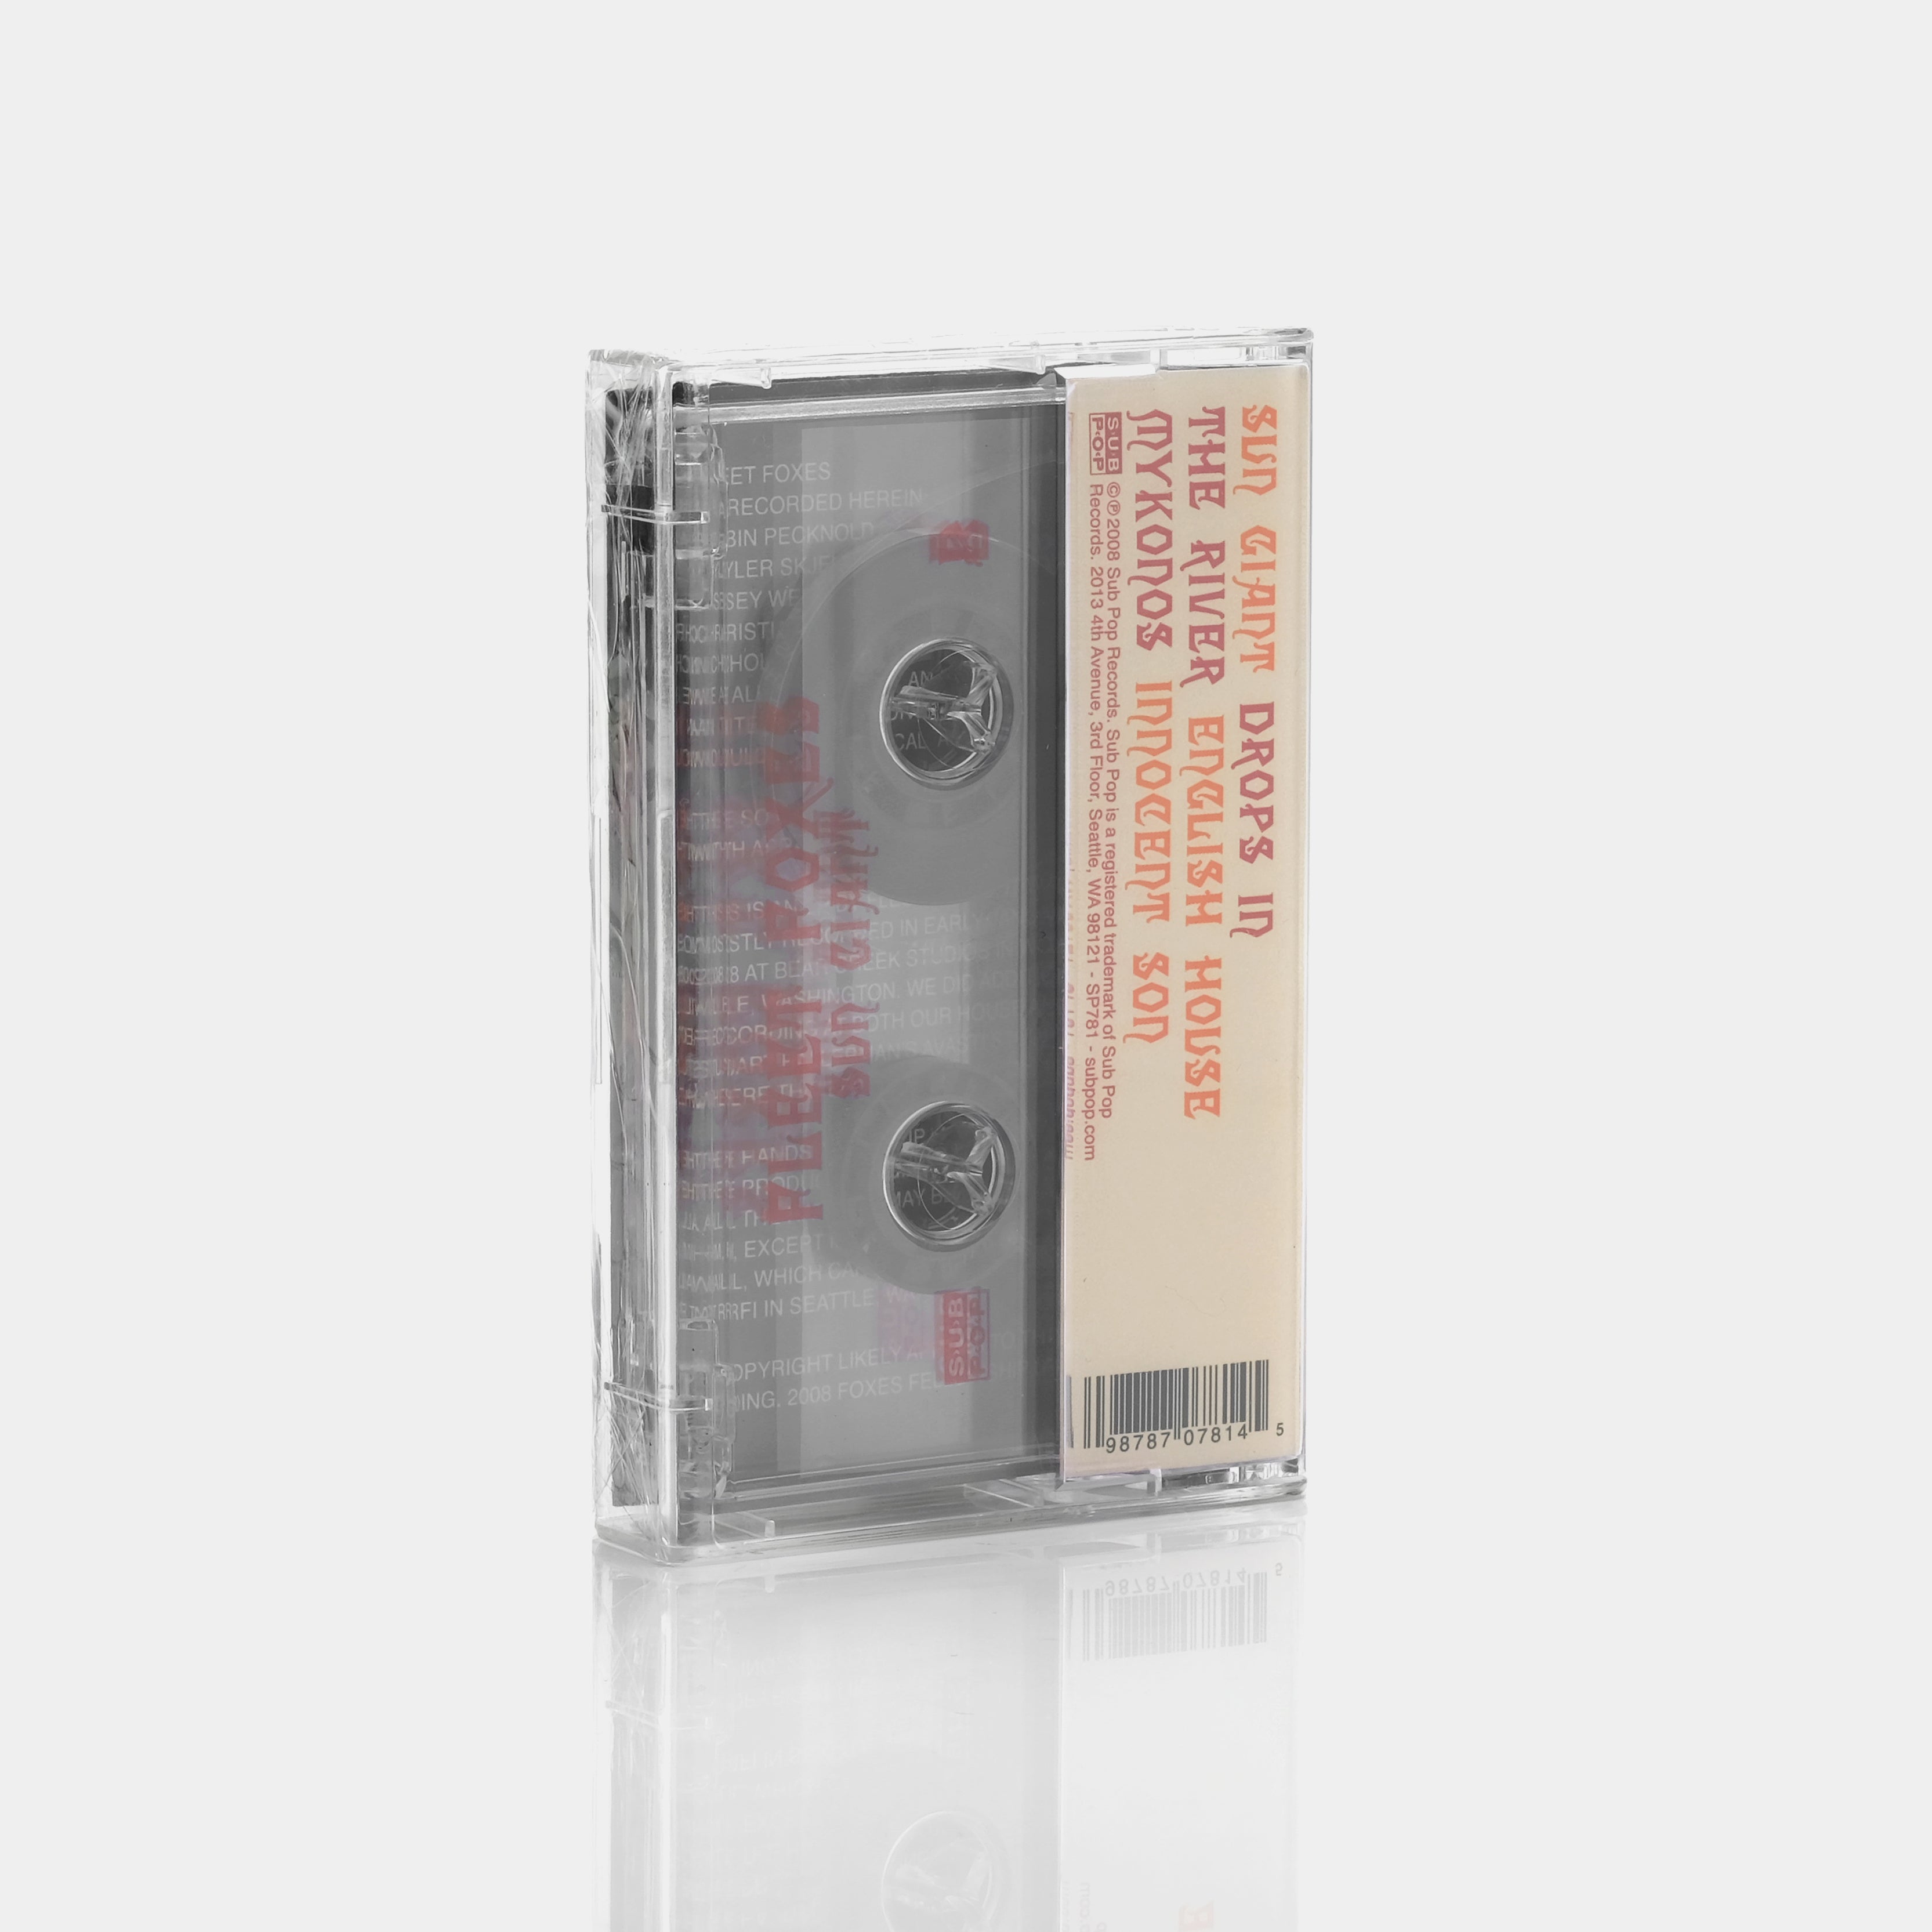 Fleet Foxes - Sun Giant Cassette Tape